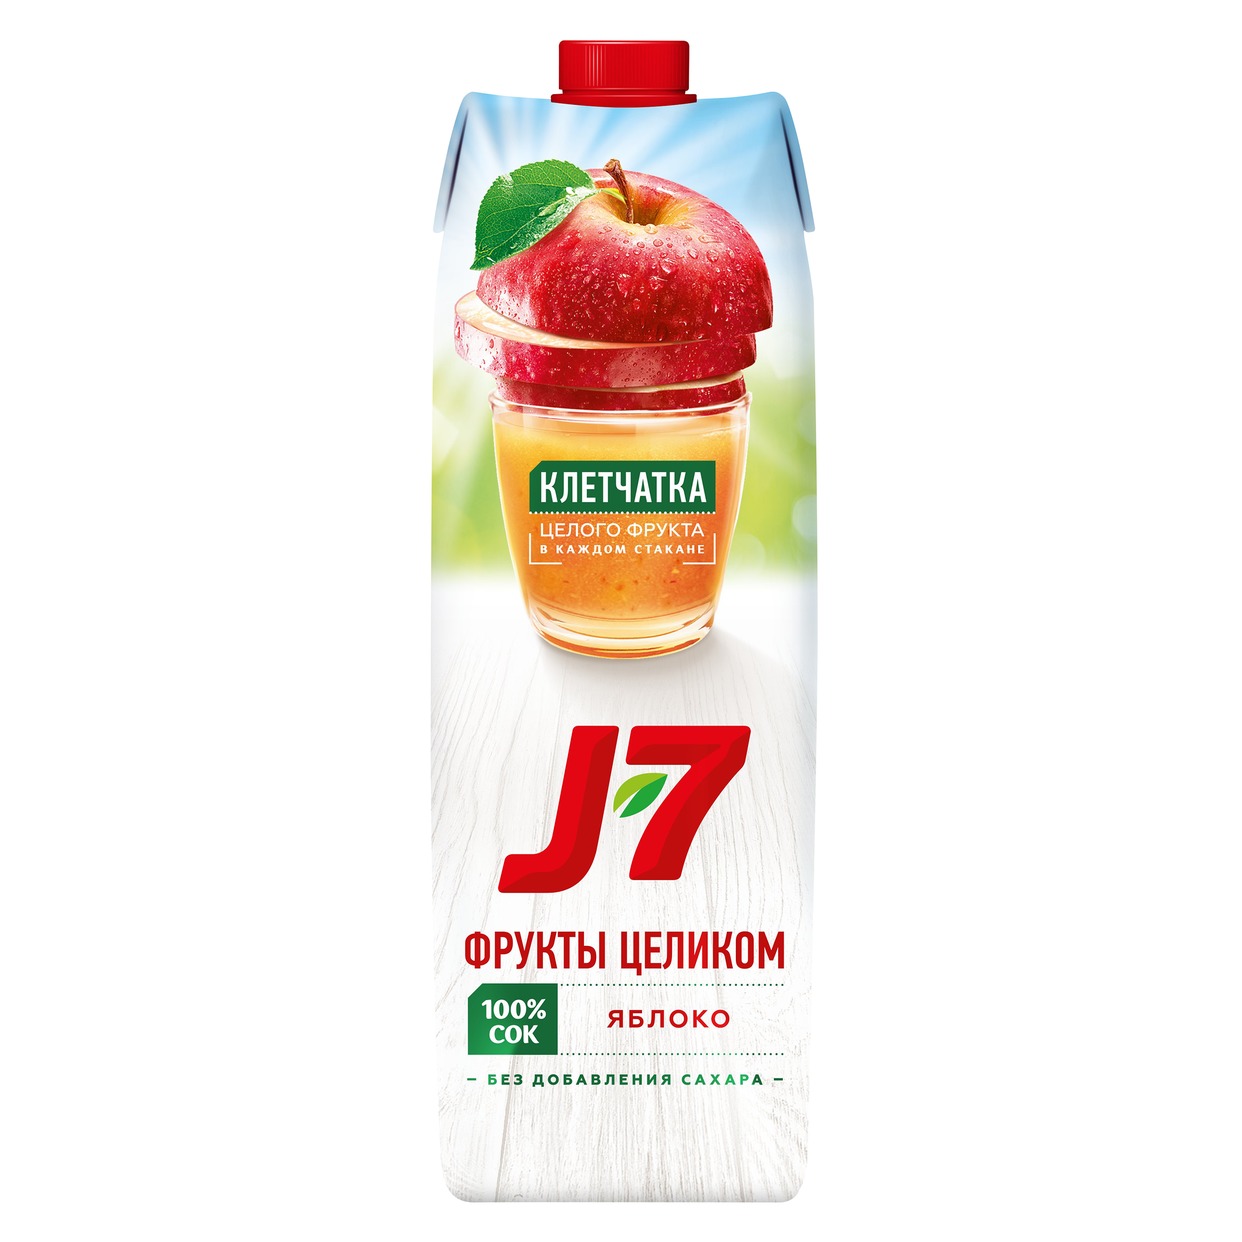 Сок J7 из яблок с мякотью для детского питания 0.97л. по акции в Пятерочке